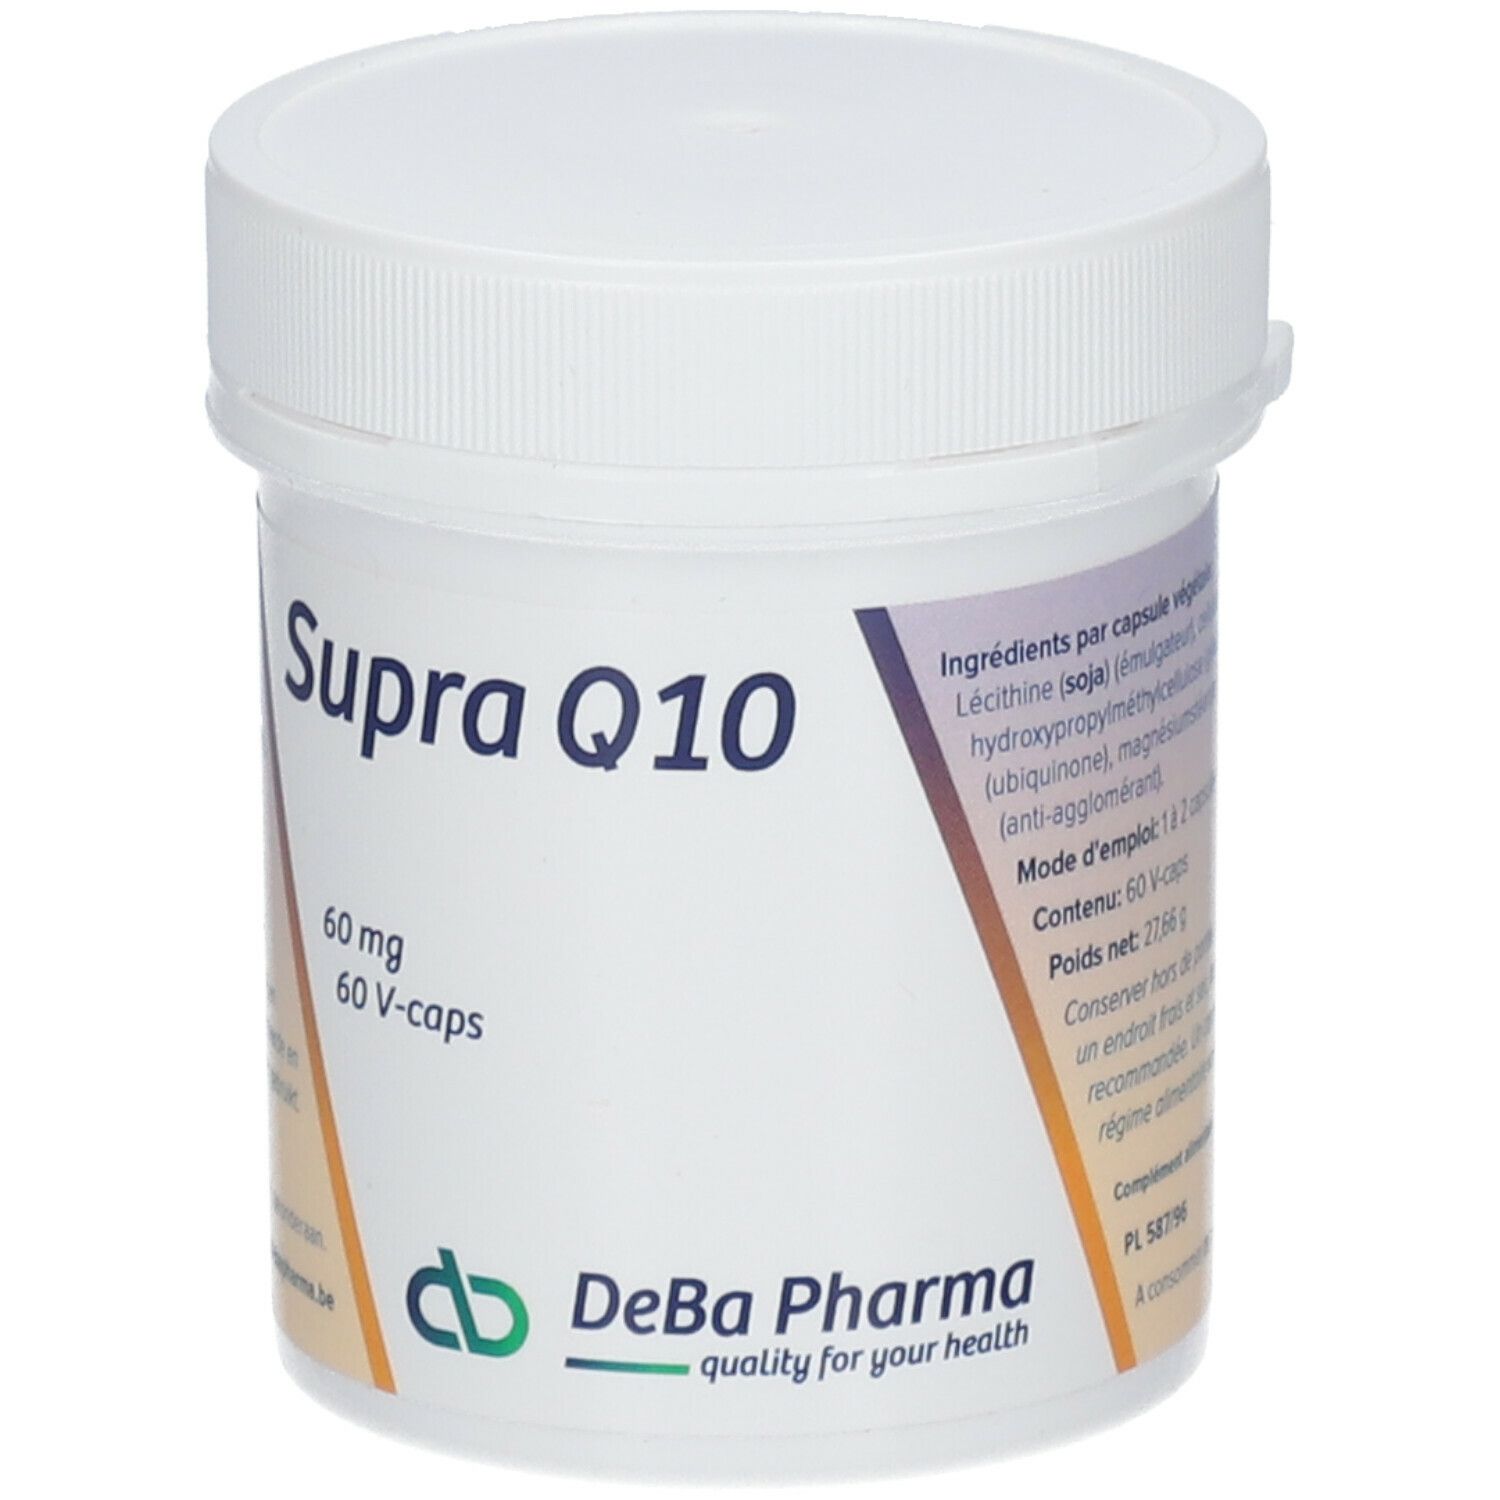 Deba Supra Q10 60 mg